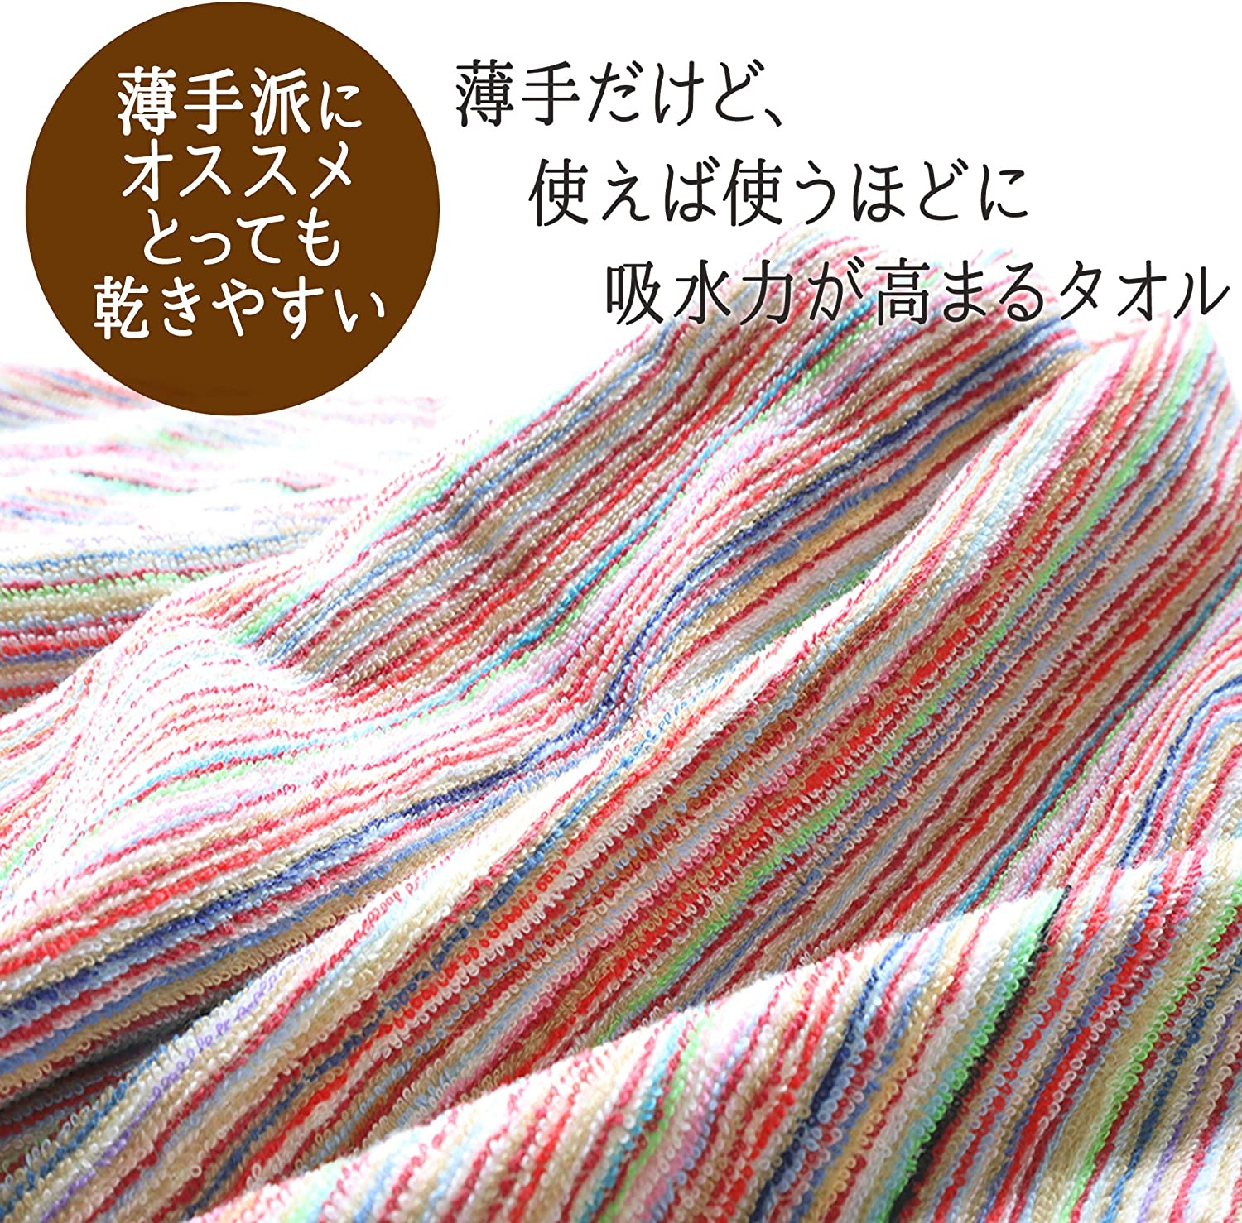 TANGONO(タンゴノ) 残糸で作ったエコなタオルセットの商品画像サムネ2 